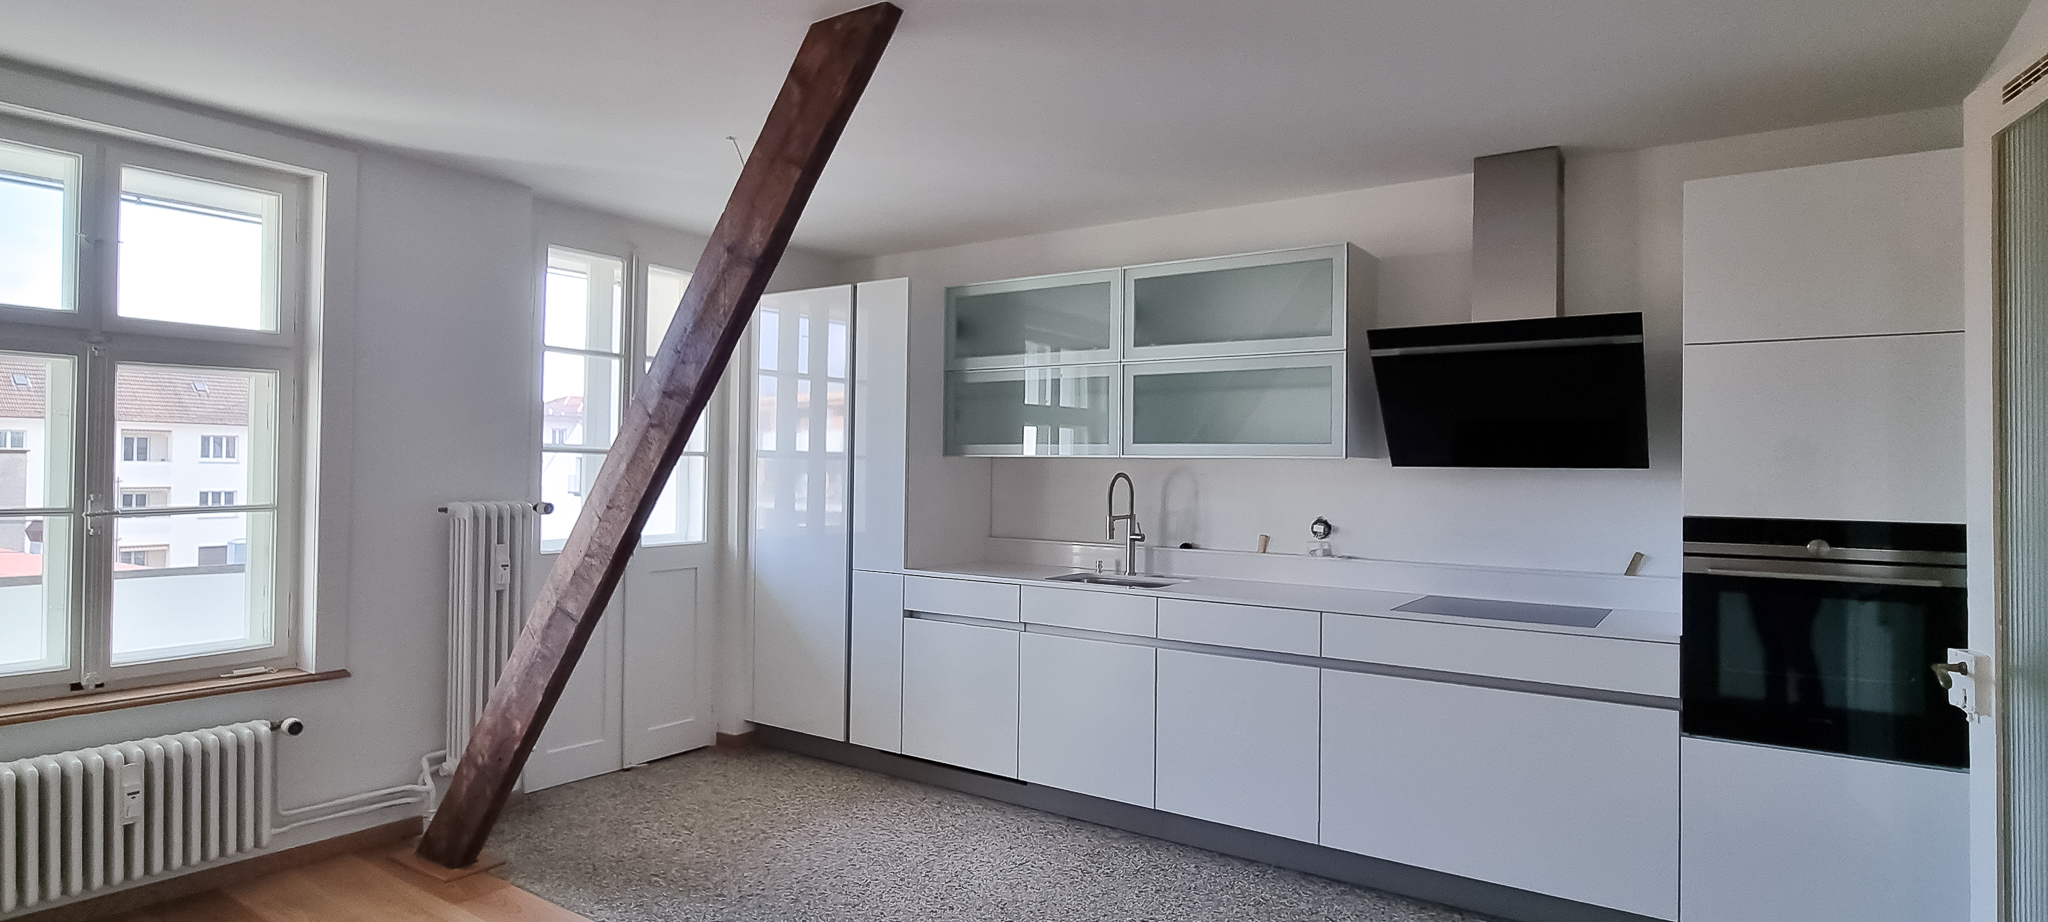 AE2P - Mehrfamilienhaus Wohnungs- und Strangsanierung – teilbewohnt | Basel (BS)